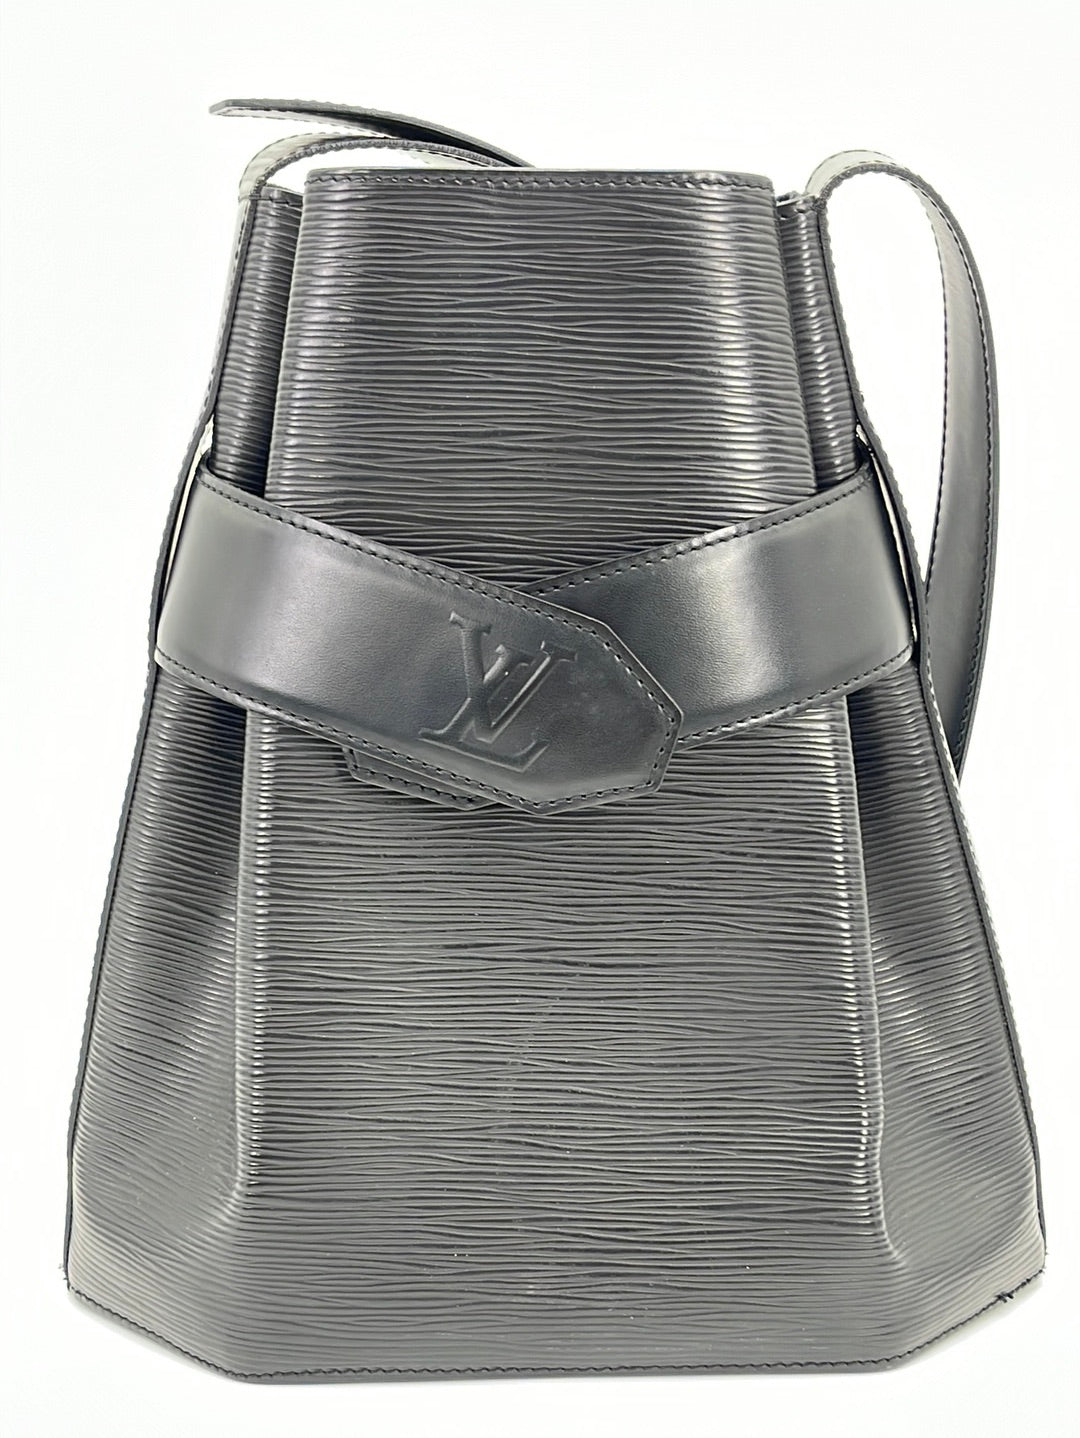 LOUIS VUITTON Shoulder Bag M80155 Sac de Paul Epi Leather Black